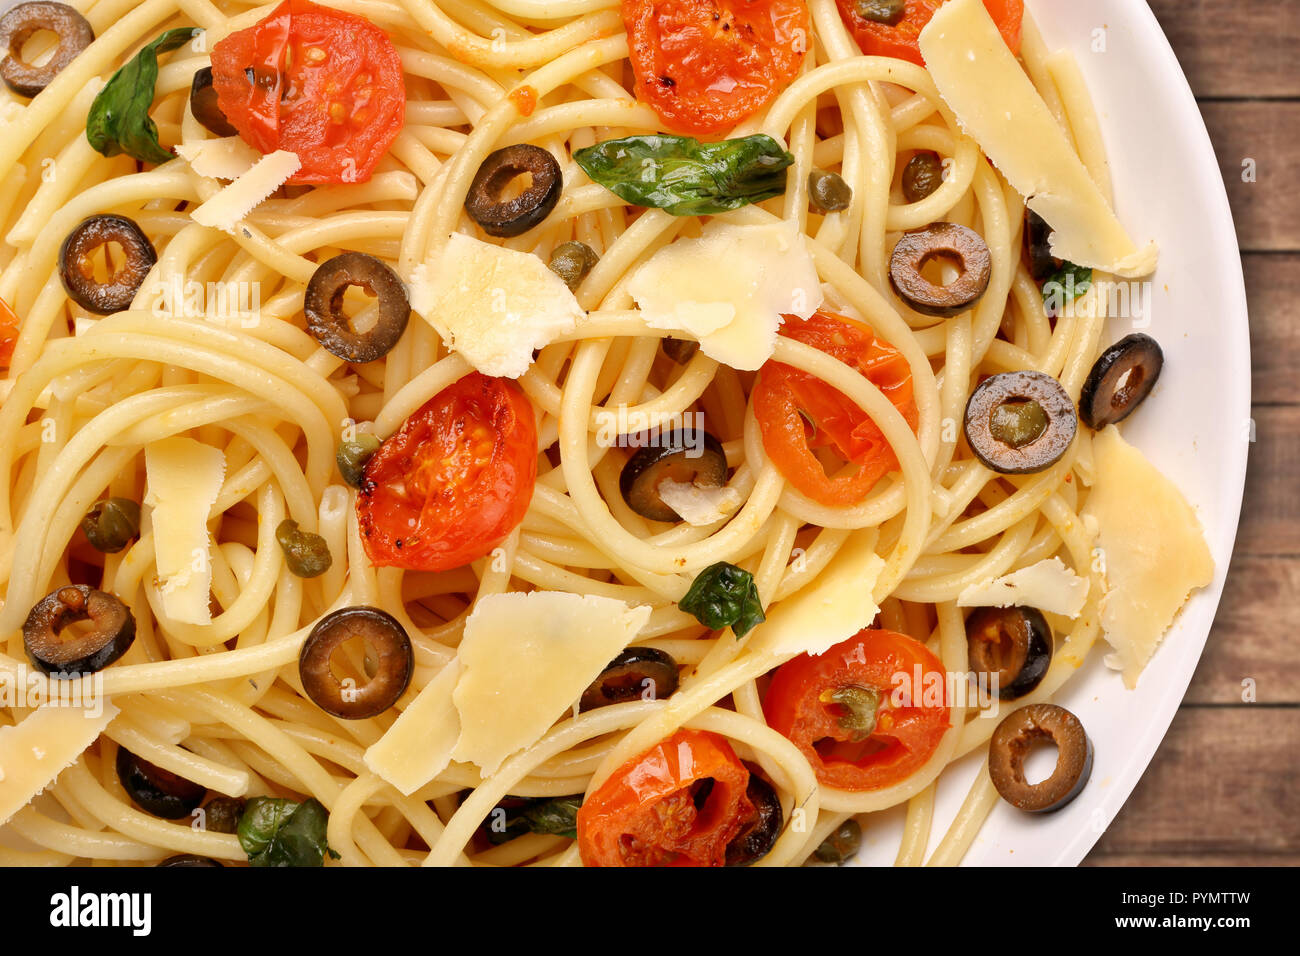 Spaghetti Alla Puttanesca, pasta with tomato and olives Stock Photo